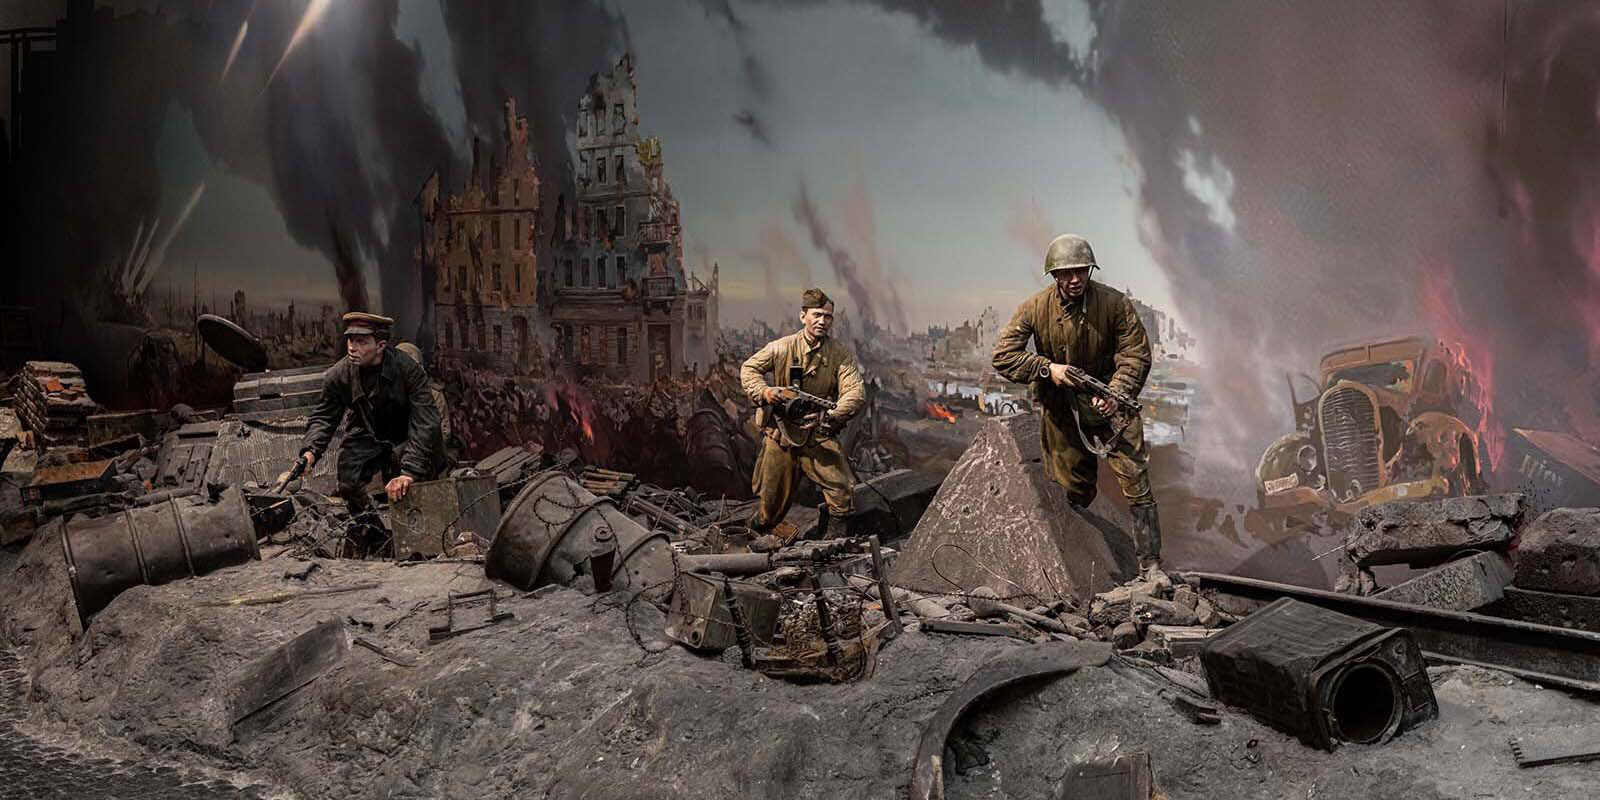 Диорама в музее Победы в Москве